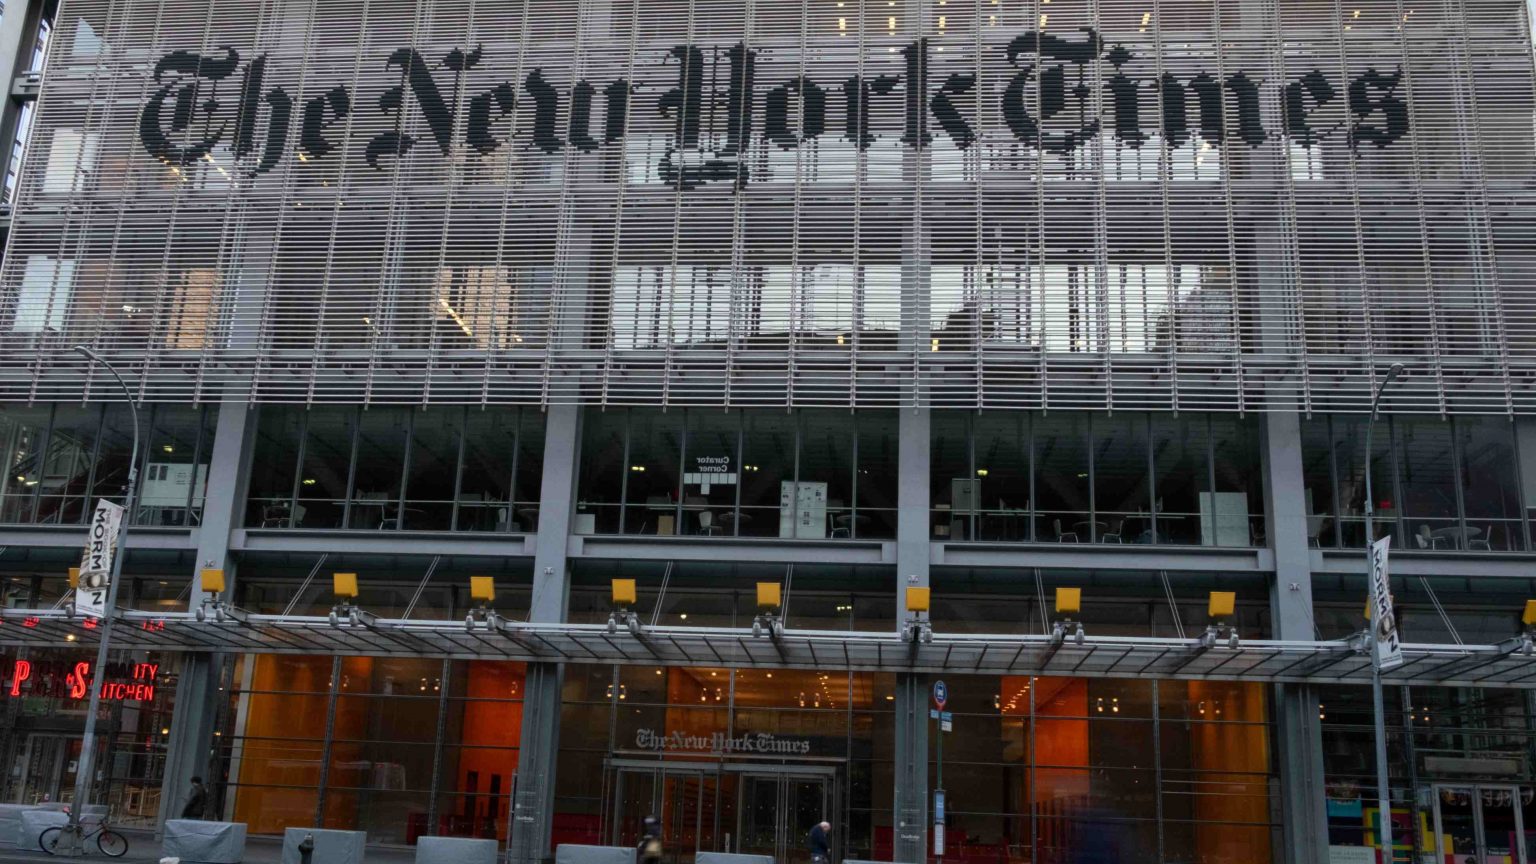 ‘The New York Times’ compra Wordle, el juego viral de descubrir palabras